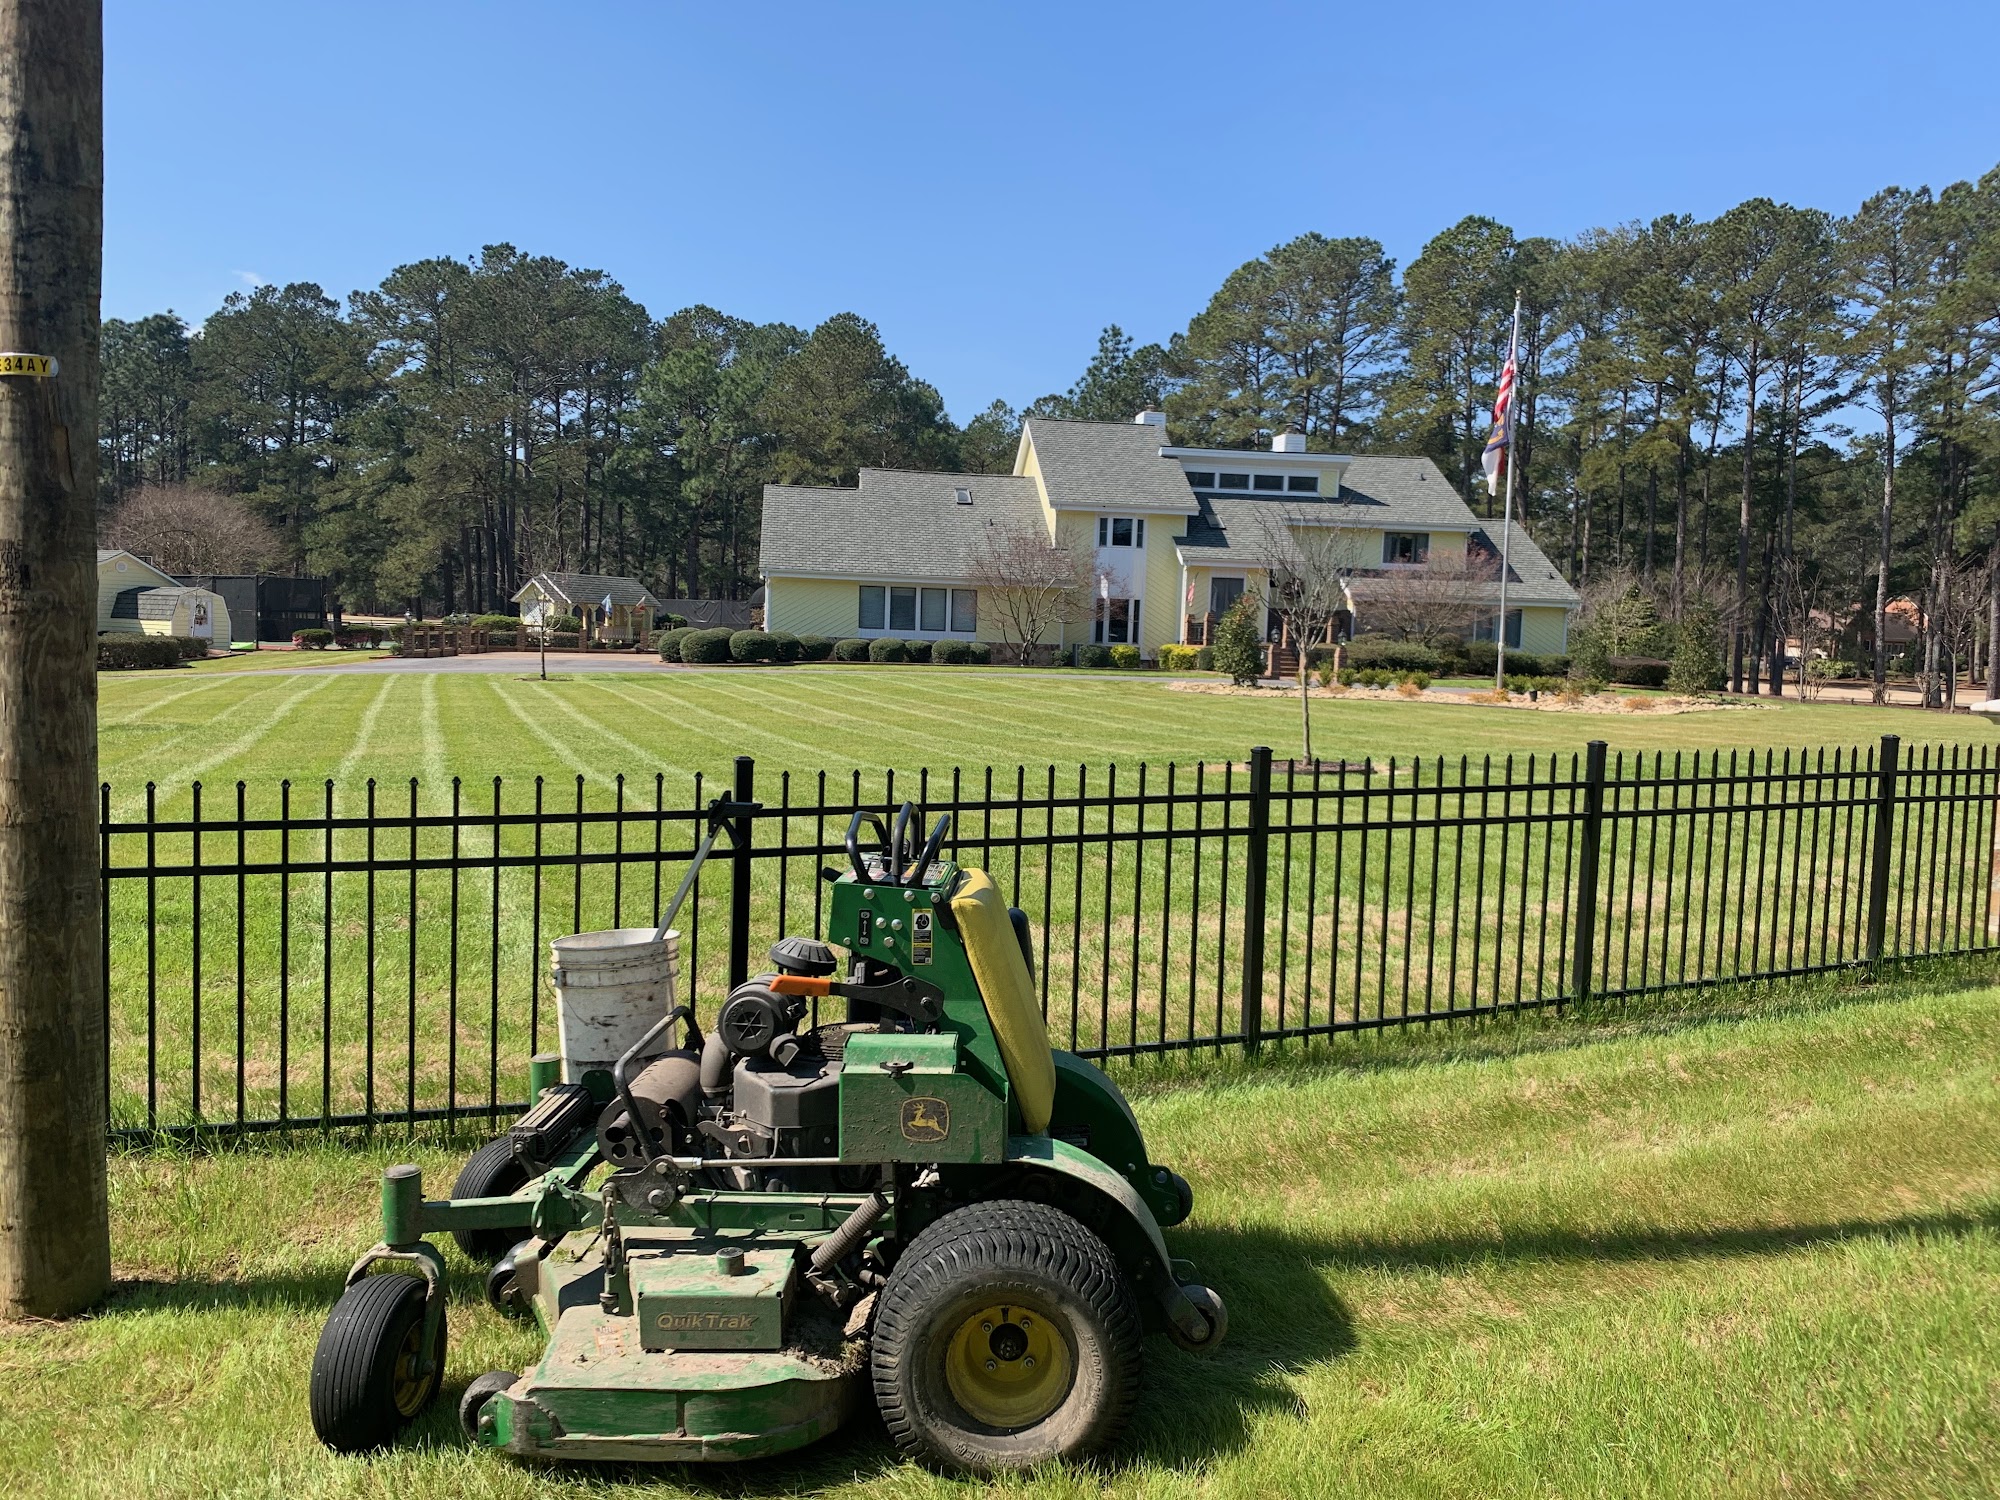 Fulcher's Lawn & Garden Service - Landscape Design & Lawn Care 2071 Sutton-Hooten Rd, La Grange North Carolina 28551